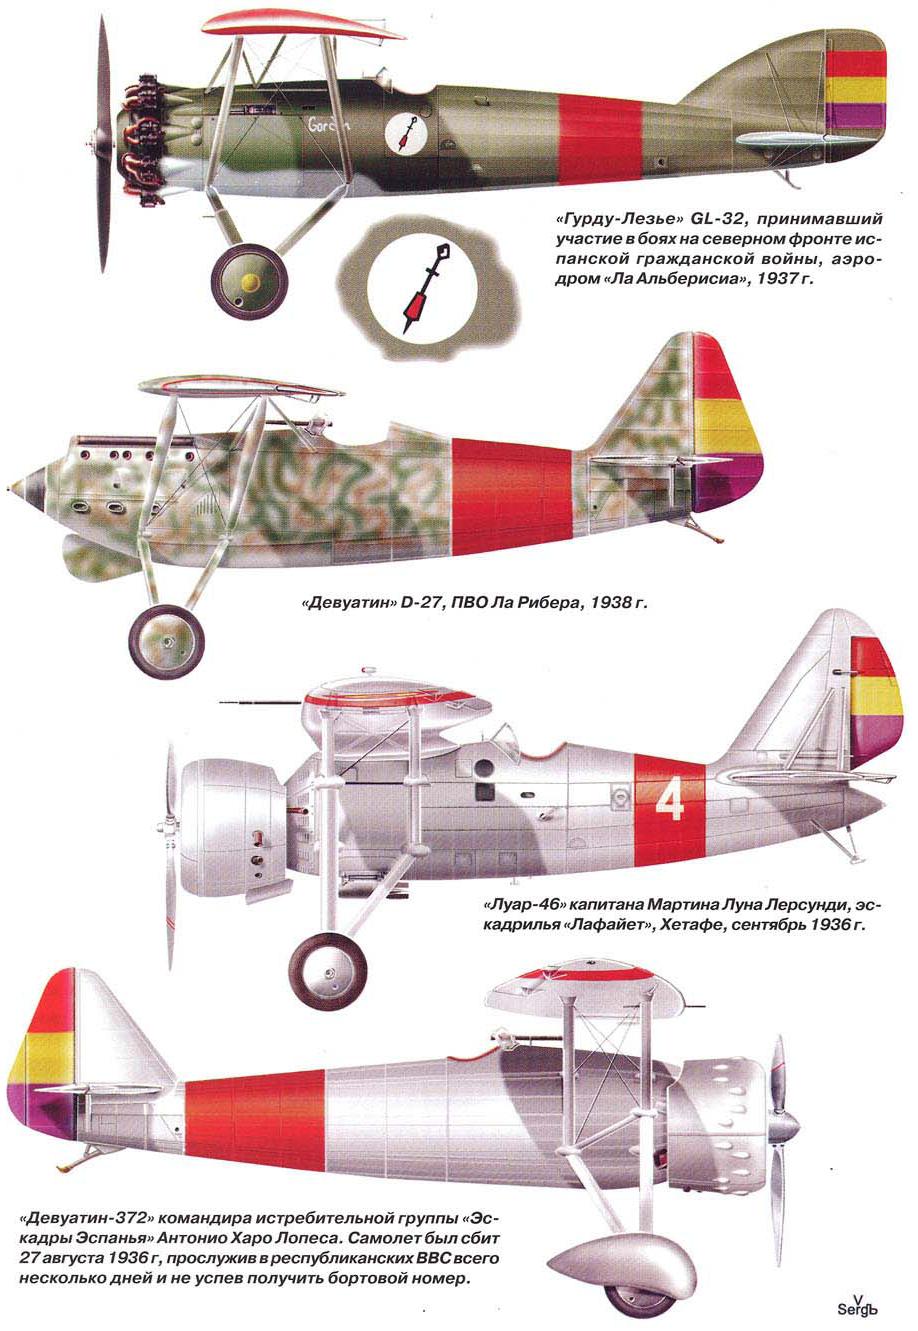 Красные крылья Франции. Французские самолеты и летчики на фронтах испанской гражданской войны